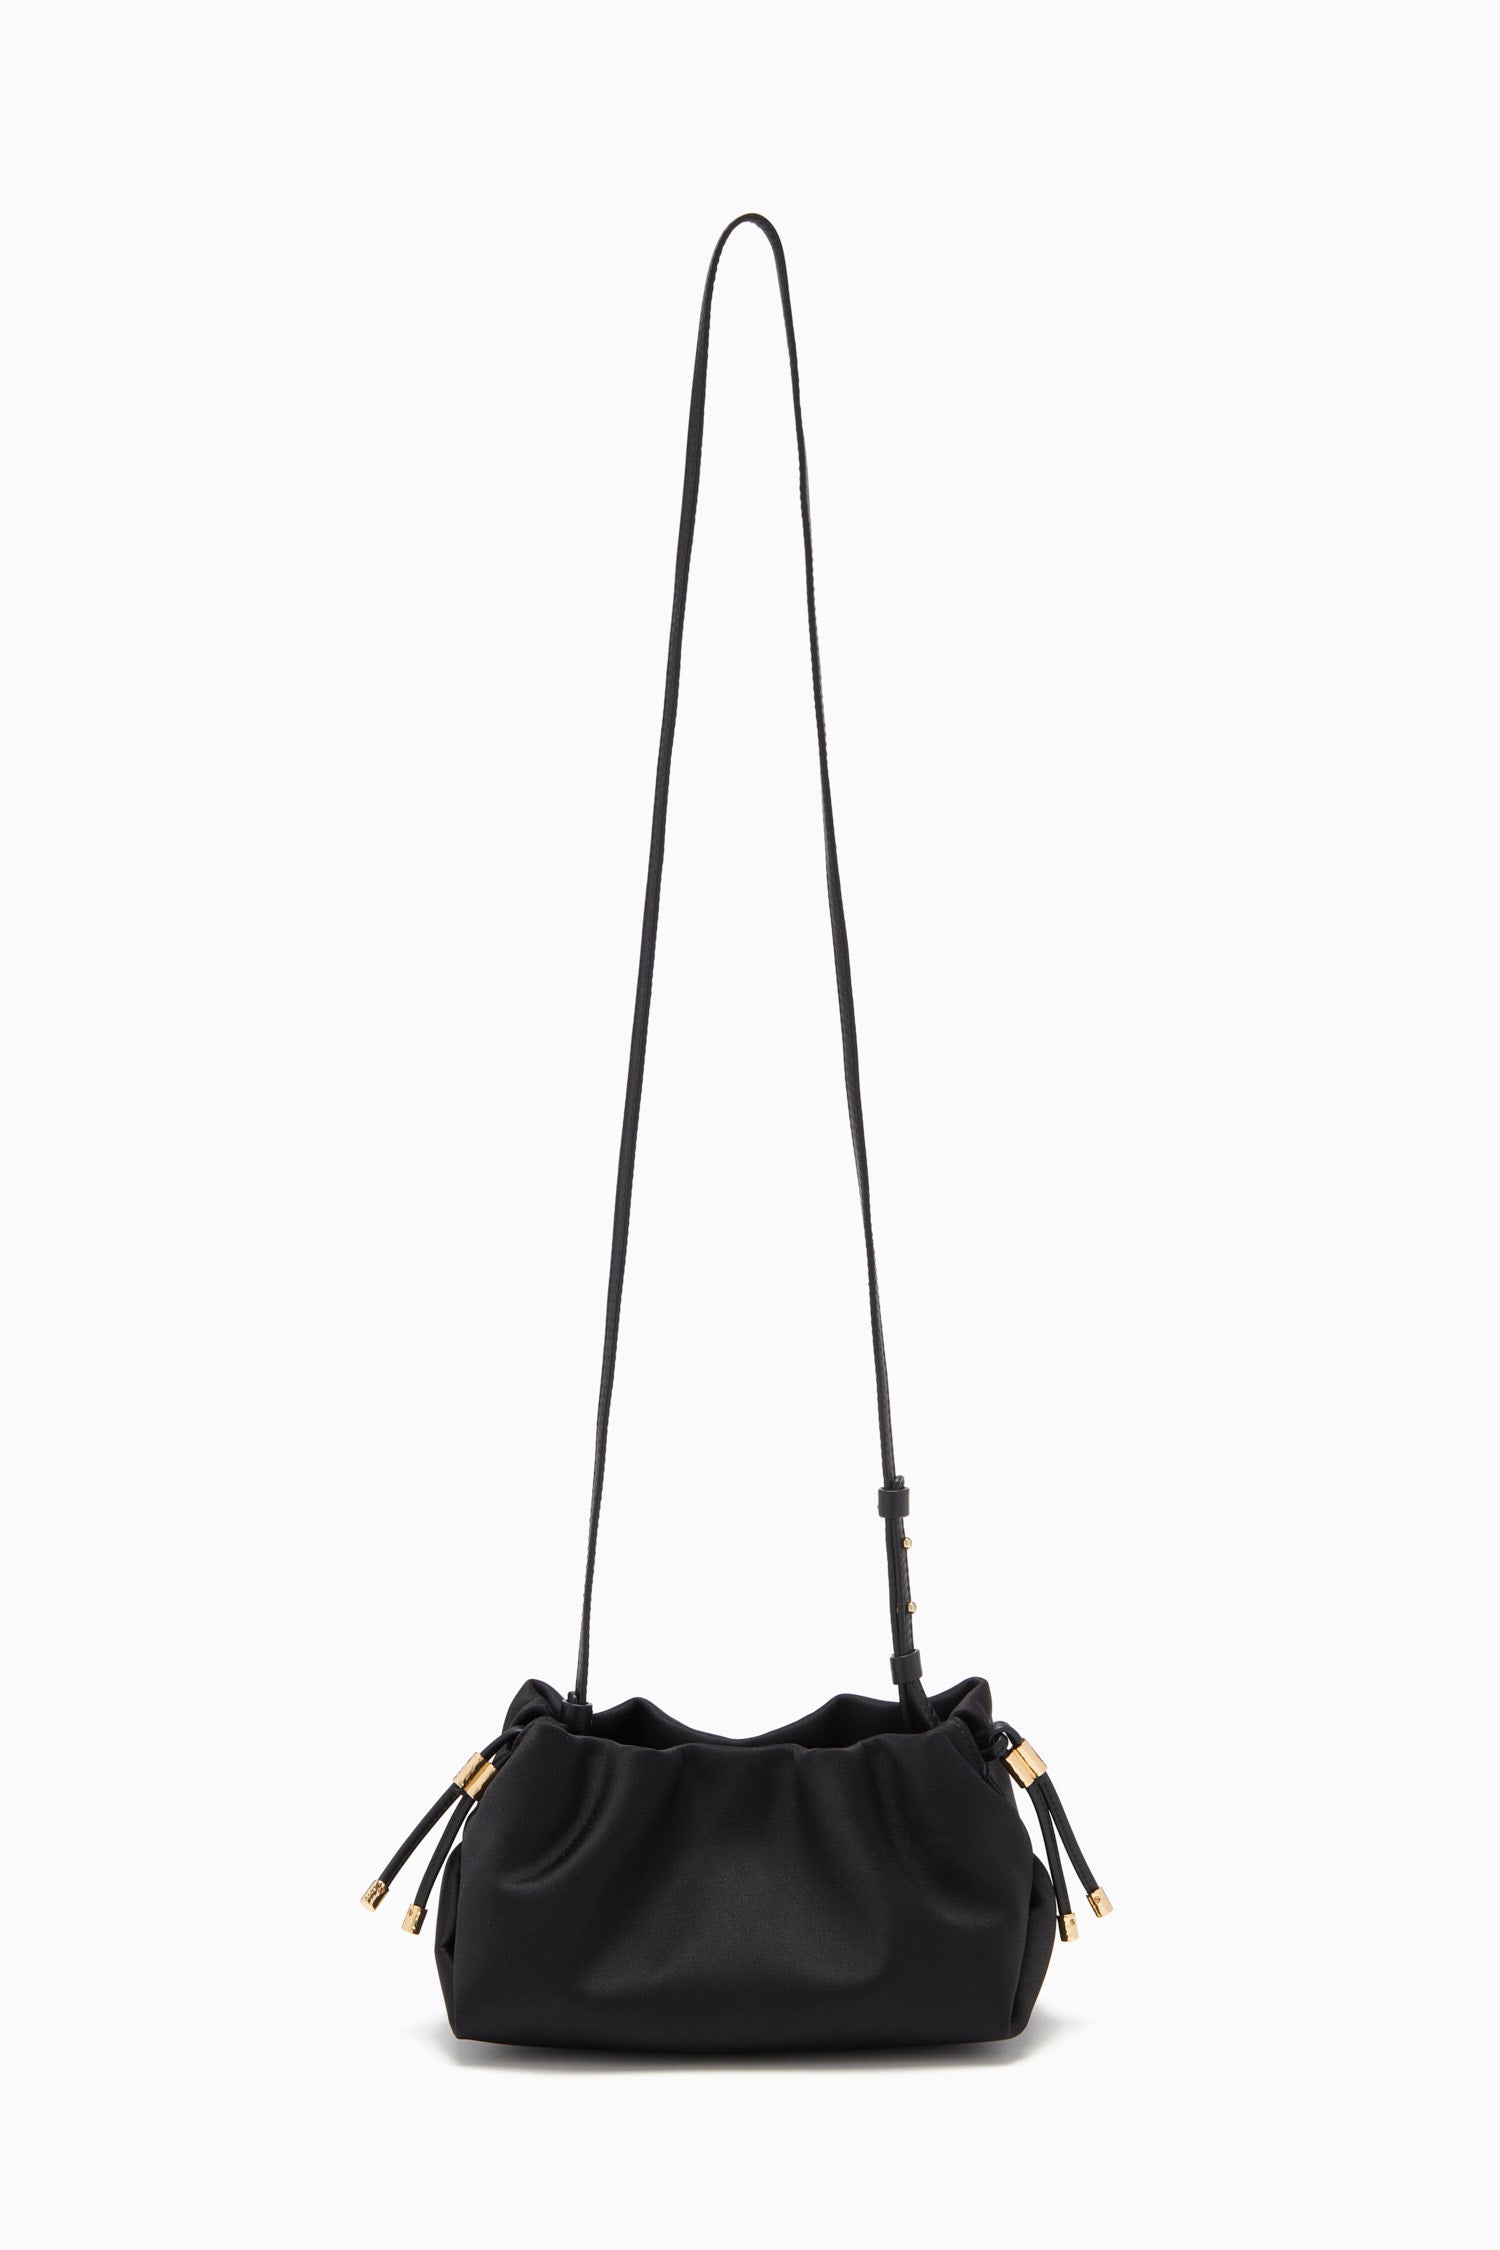 Clutch Wristlet Handbag Genuine Leather with Shoulder Bag RFID